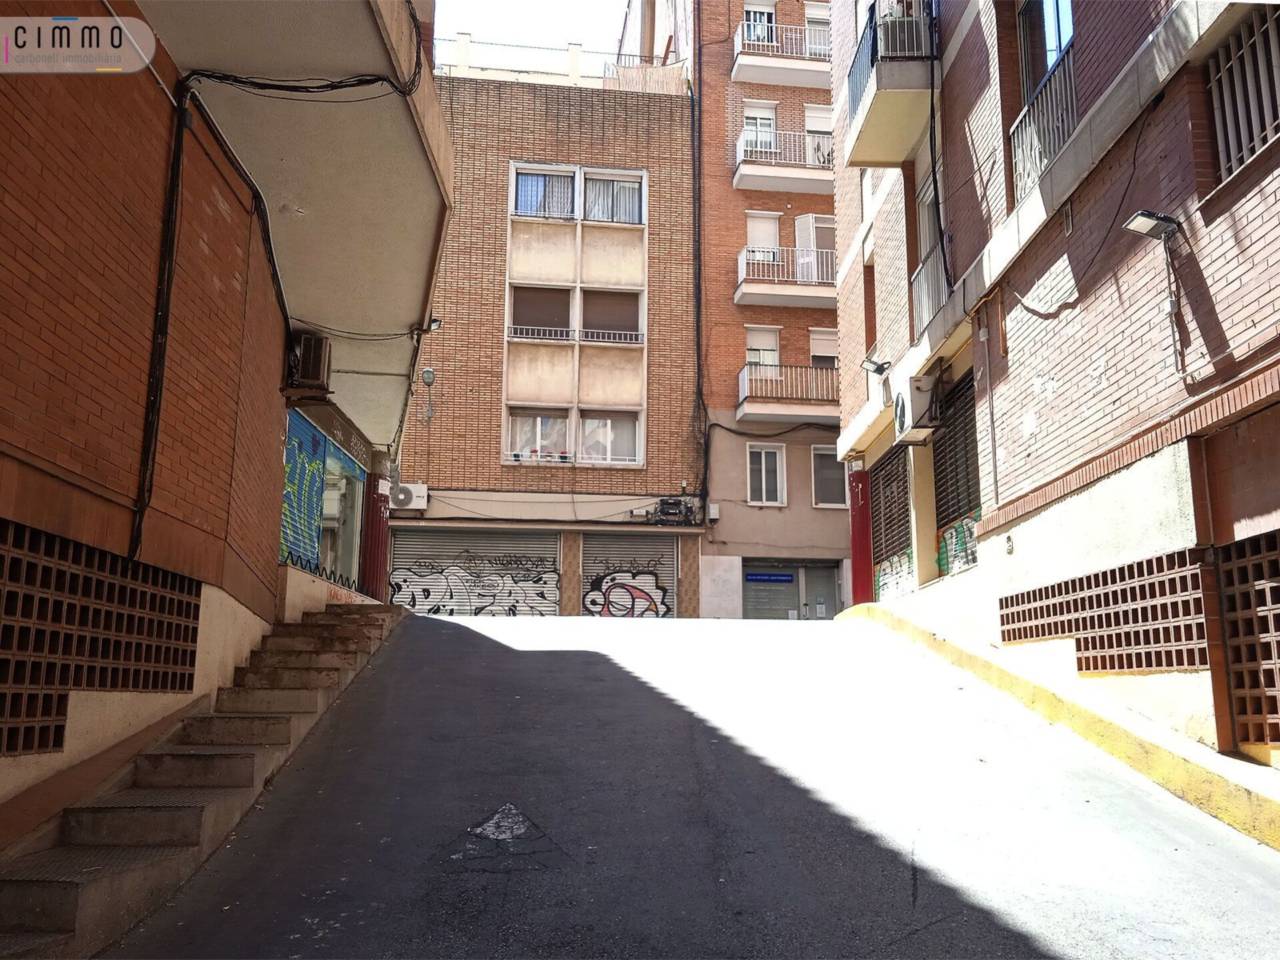 Parking en alquiler Sants (Barcelona Capital)